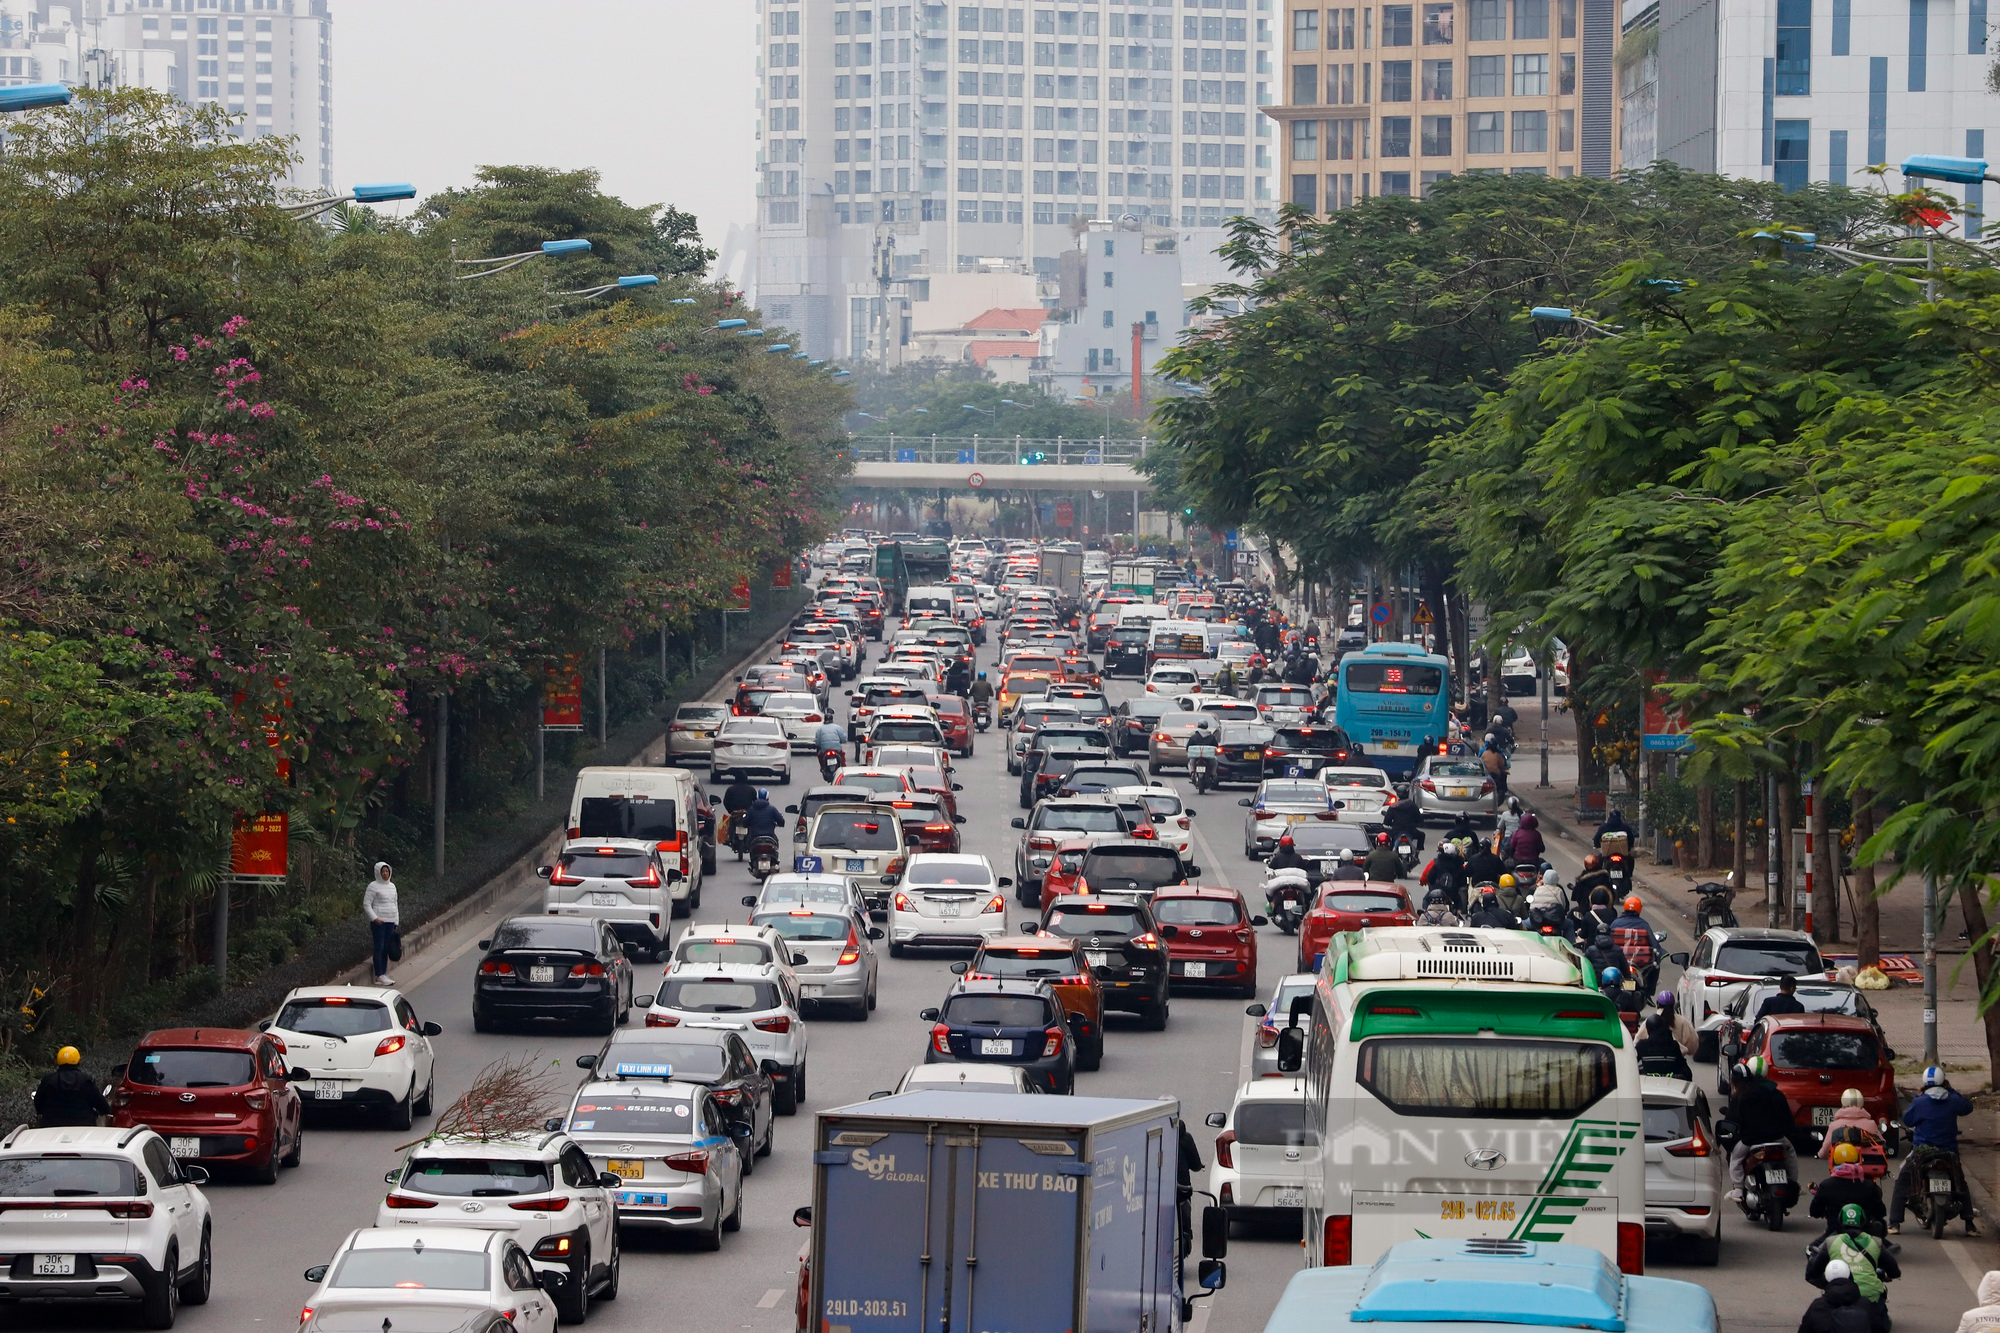 Xe buýt hỏng giữa đường, đường phố Hà Nội ùn tắc kéo dài hàng Km ngày cận Tết - Ảnh 16.